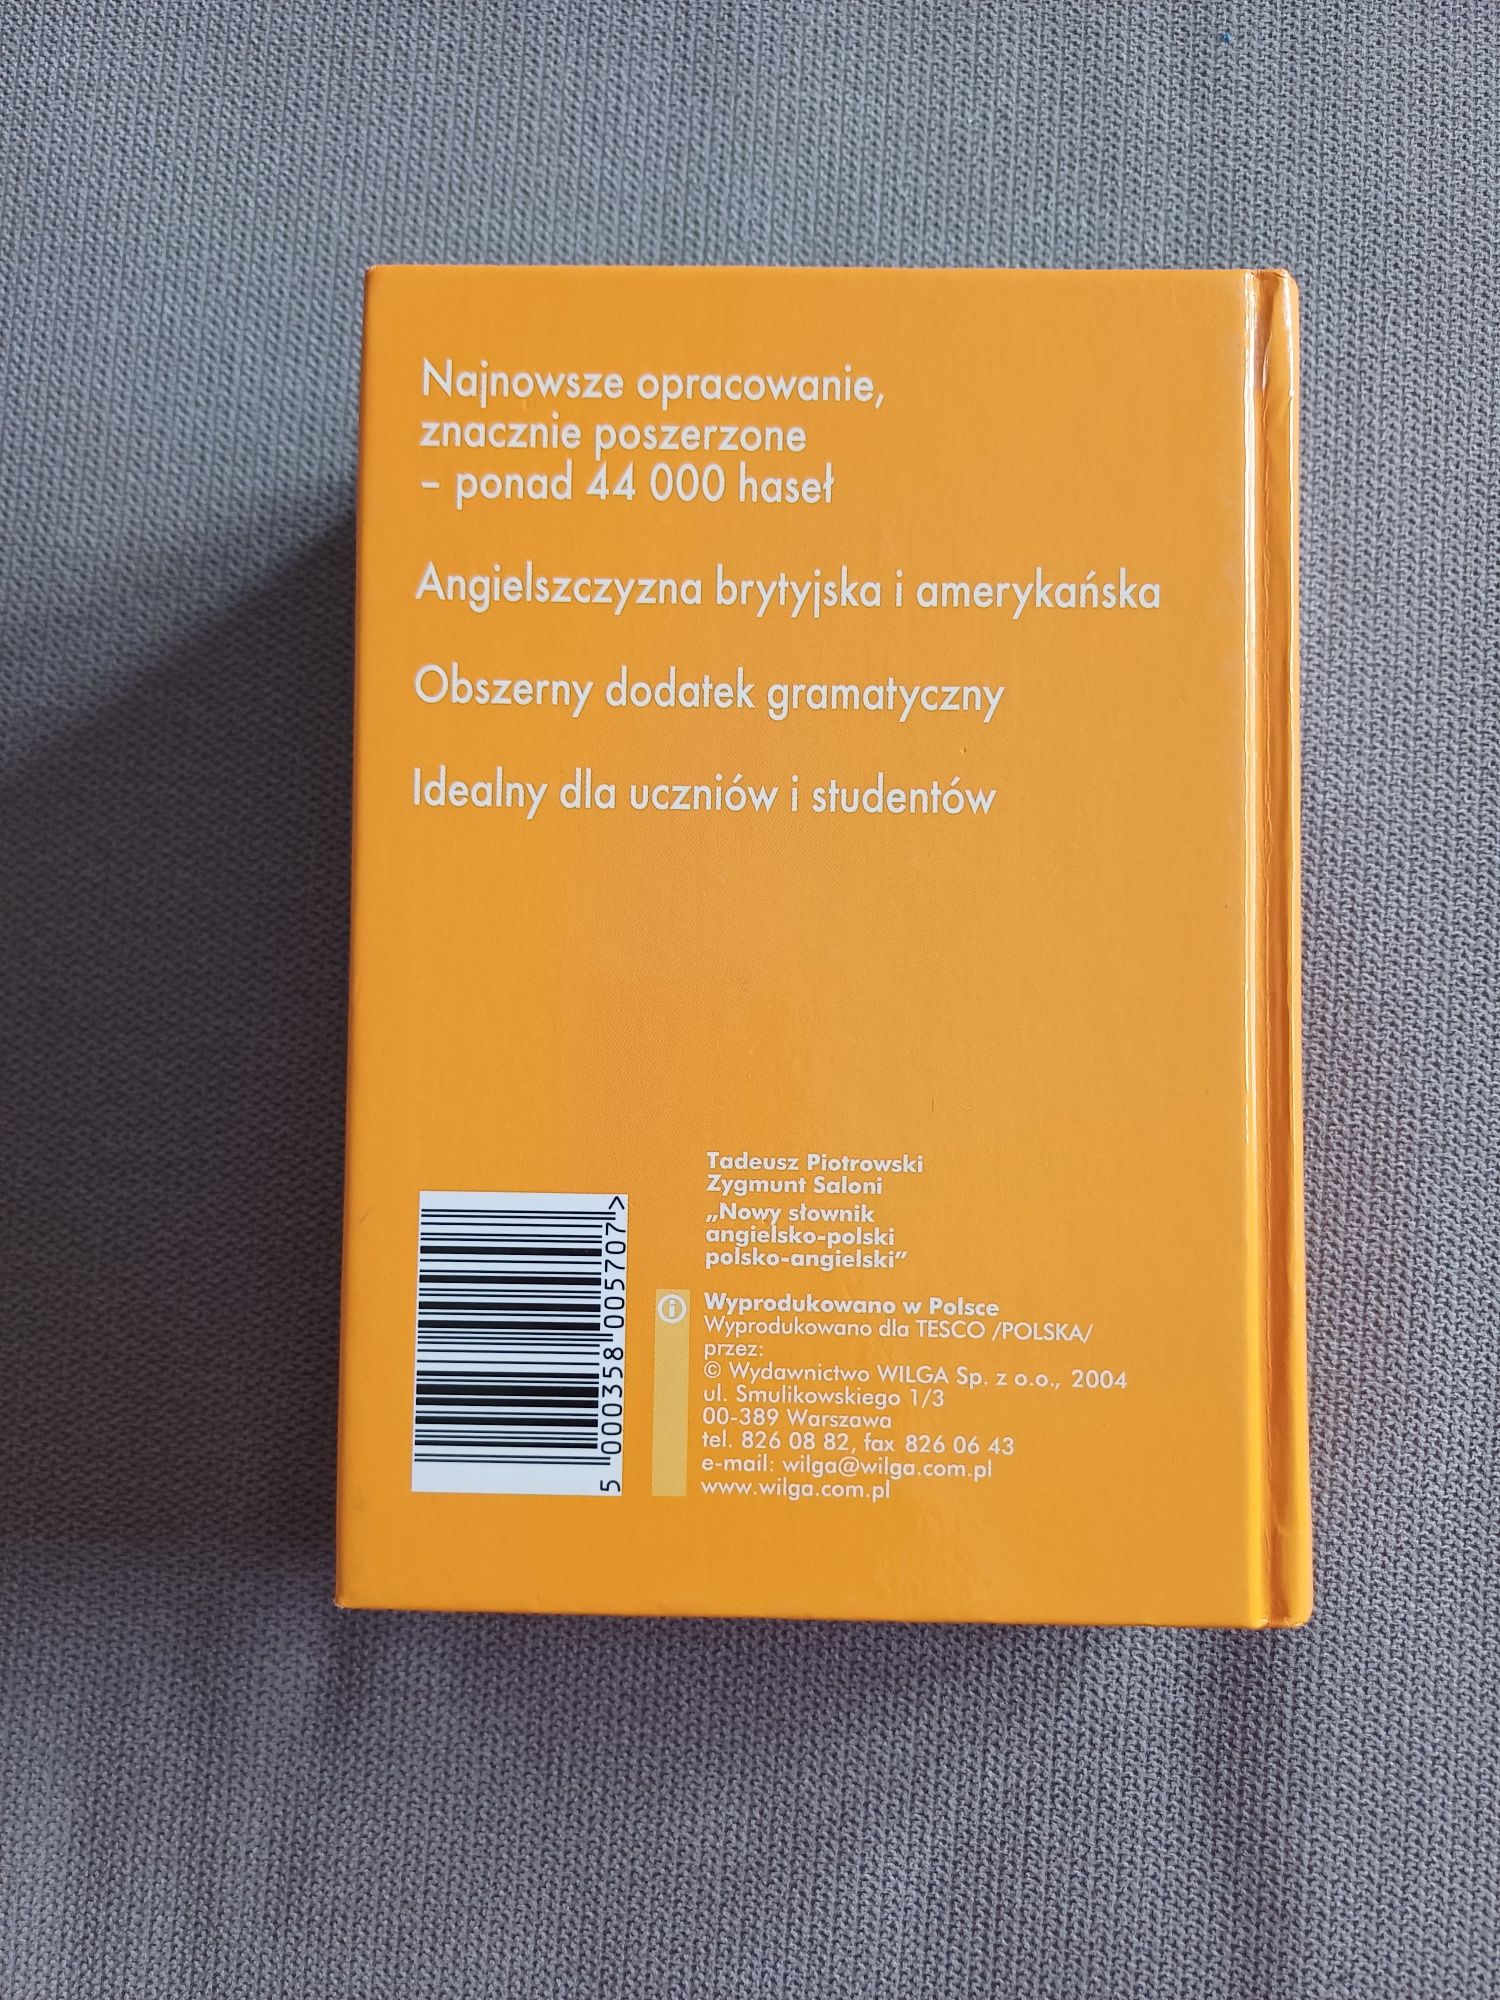 Nowy słownik angielsko-polski